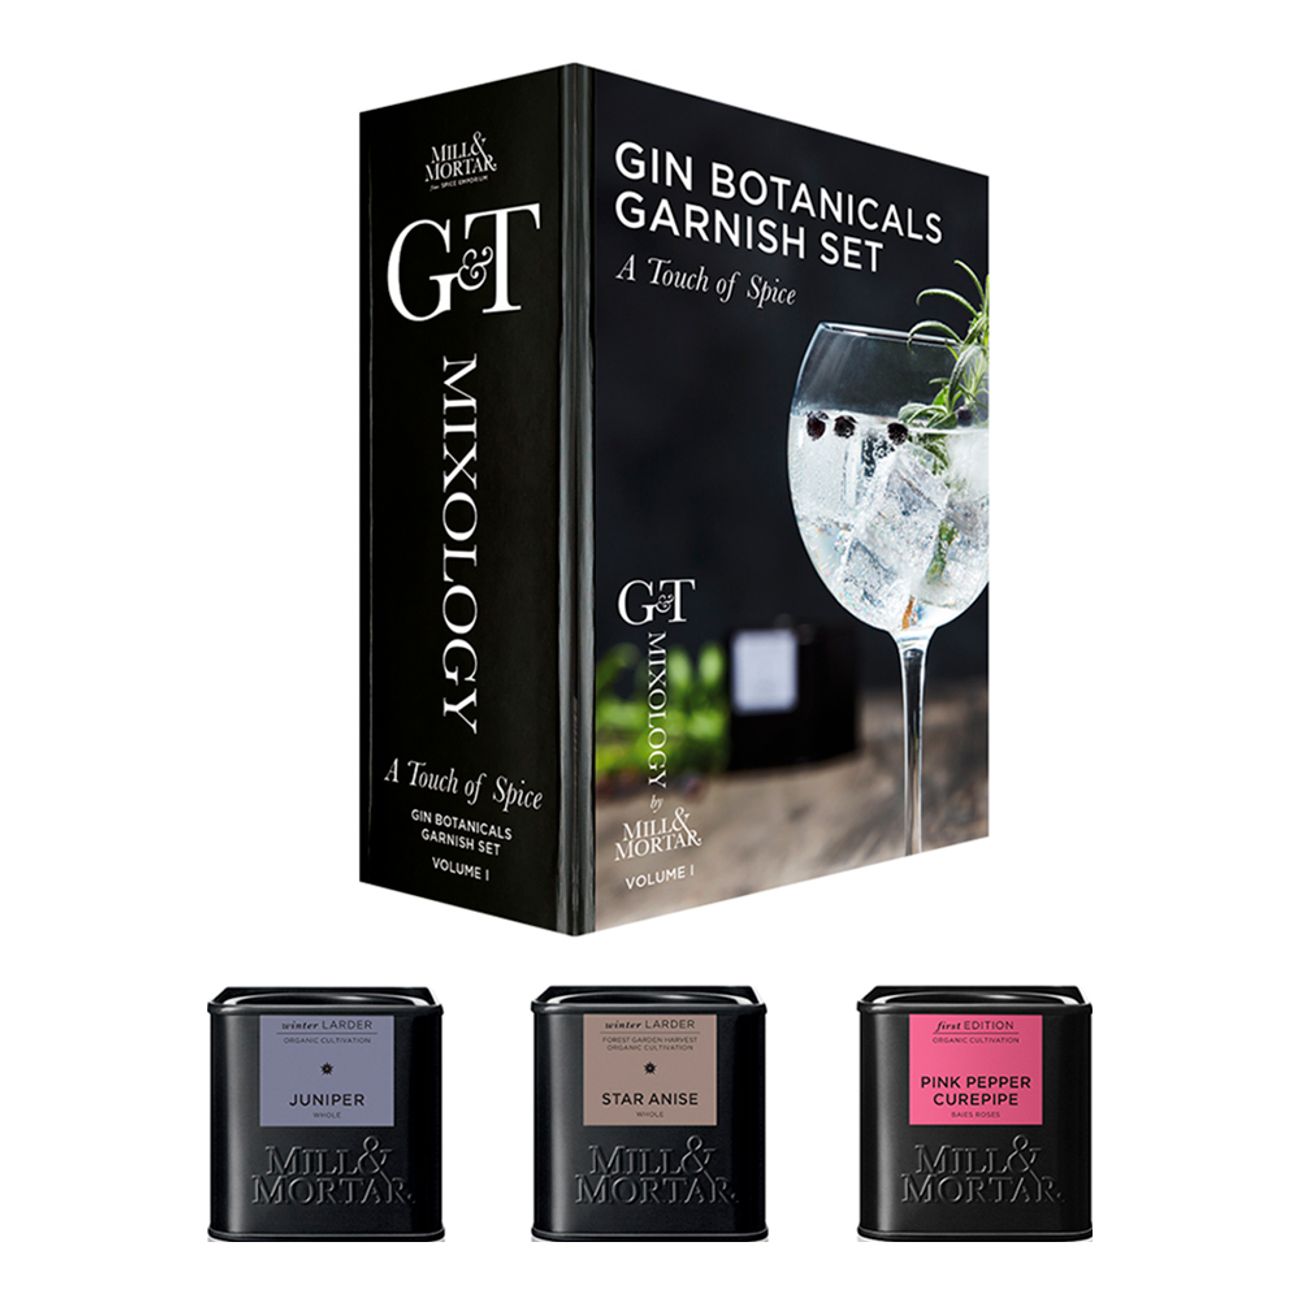 gin-botanicals-garnisch-set-a-touch-of-spice-79700-1